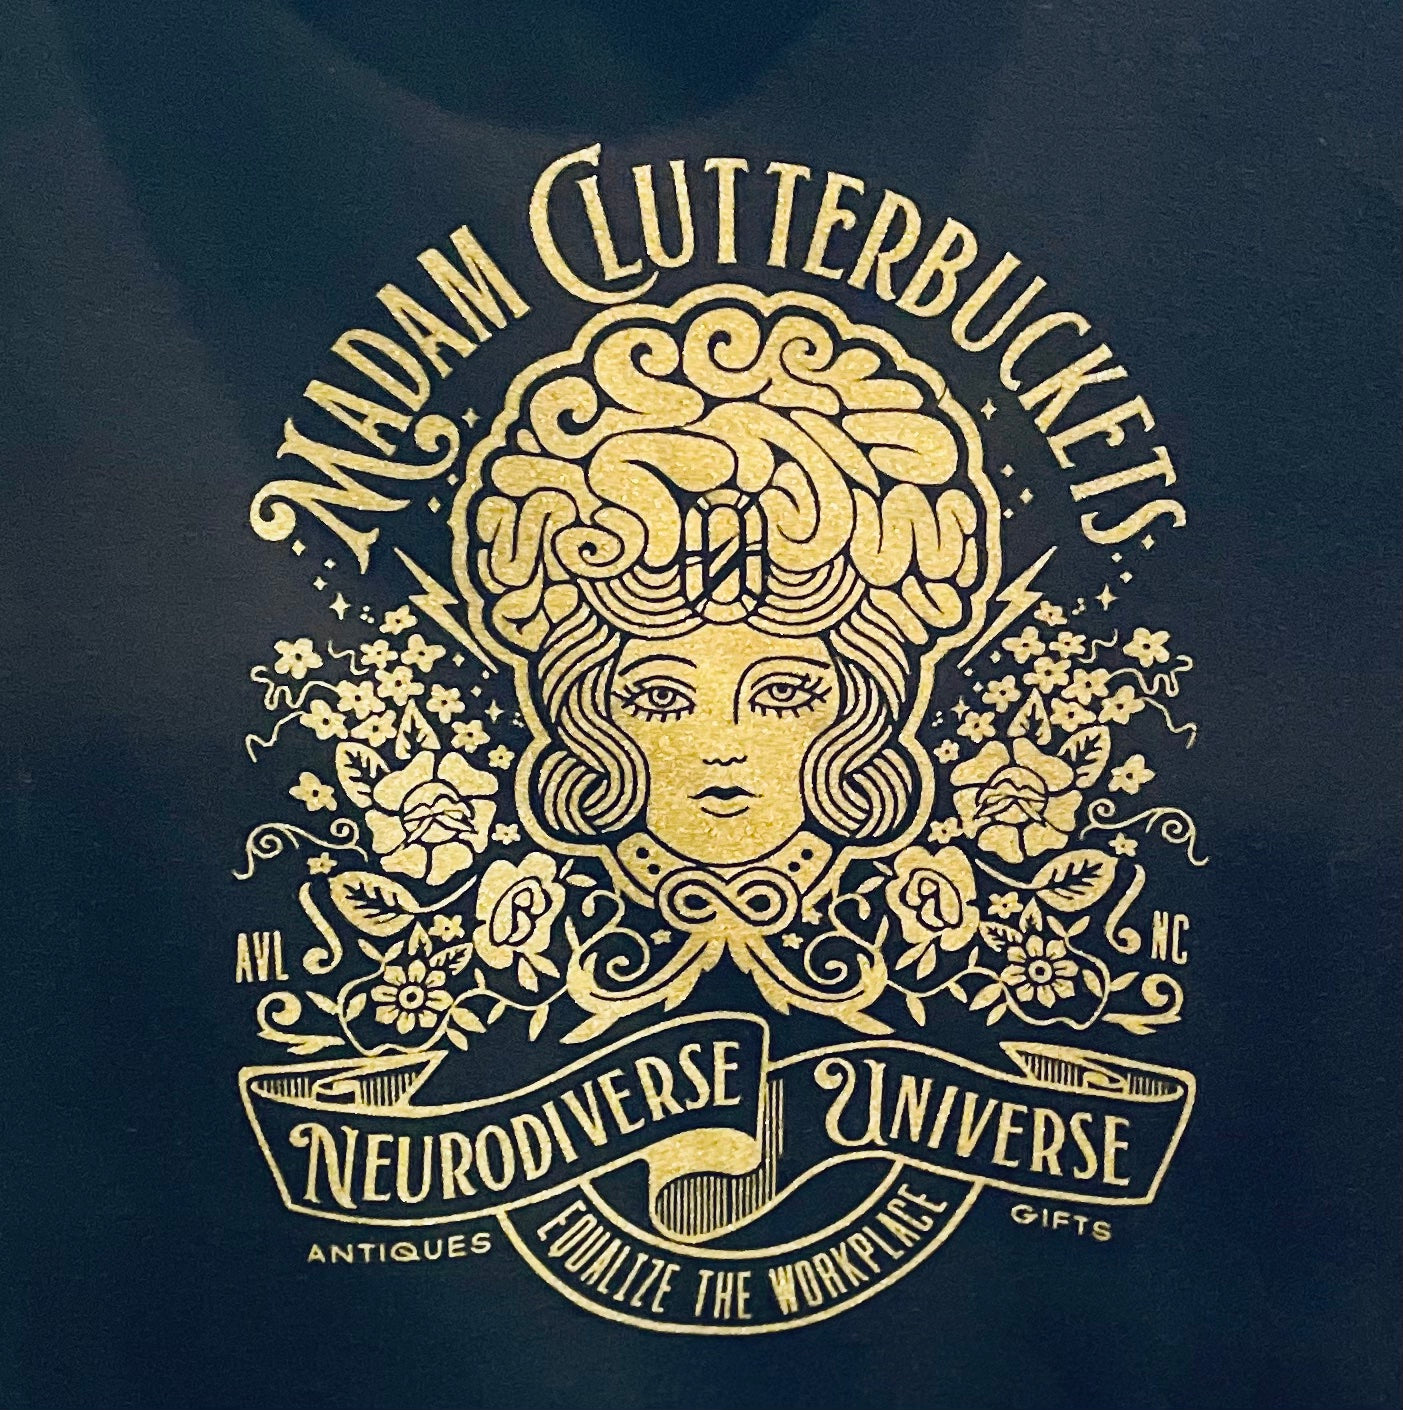 Madam Clutterbucket's Neurodiverse Universe Long Sleeve T-shirt!